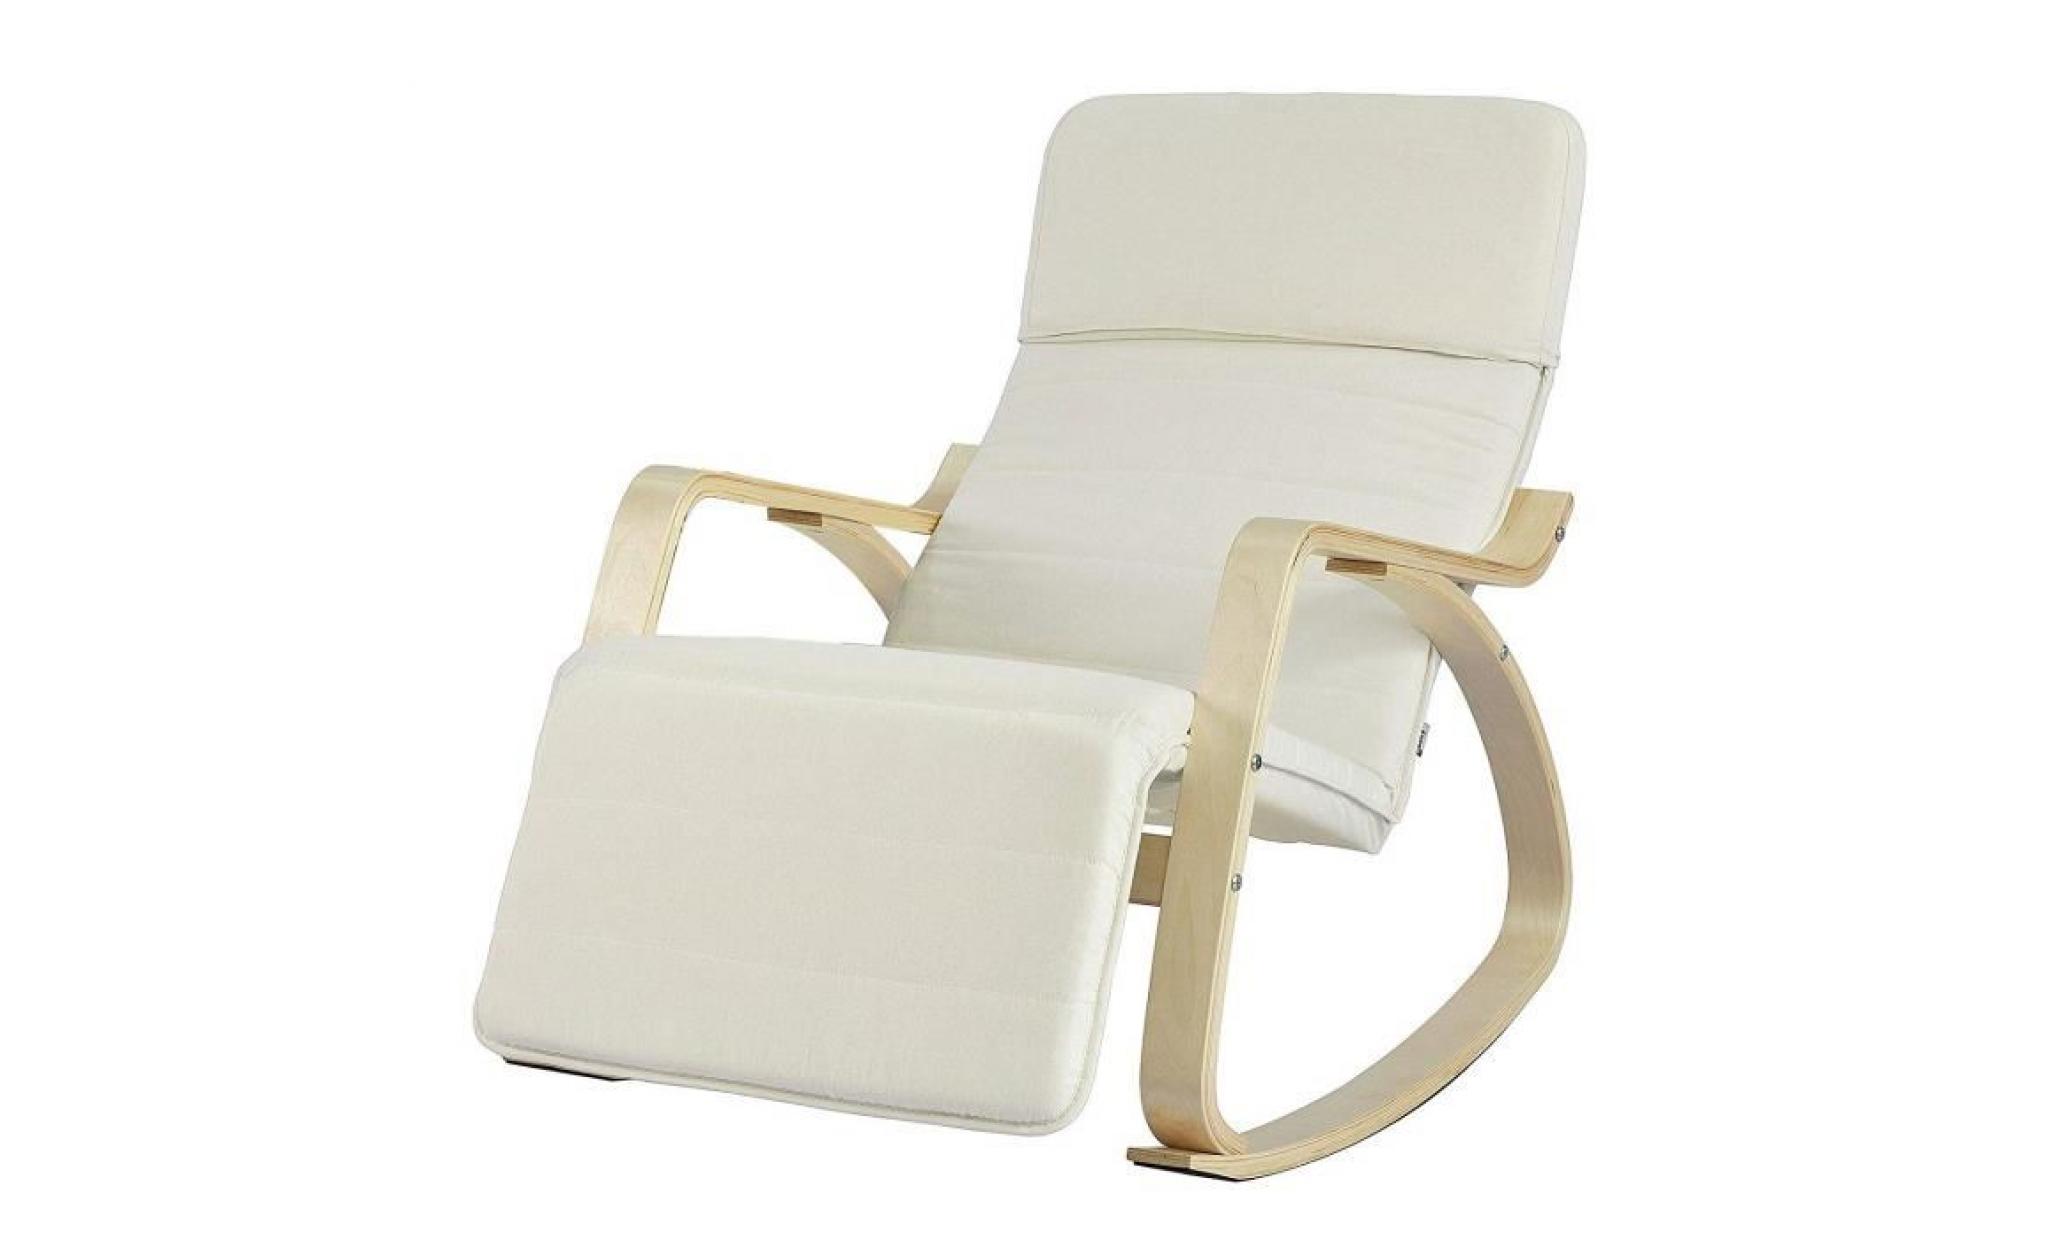 fauteuil à bascule avec repose pied réglable design rocking chair fauteuil relax bouleau flexible (beige)